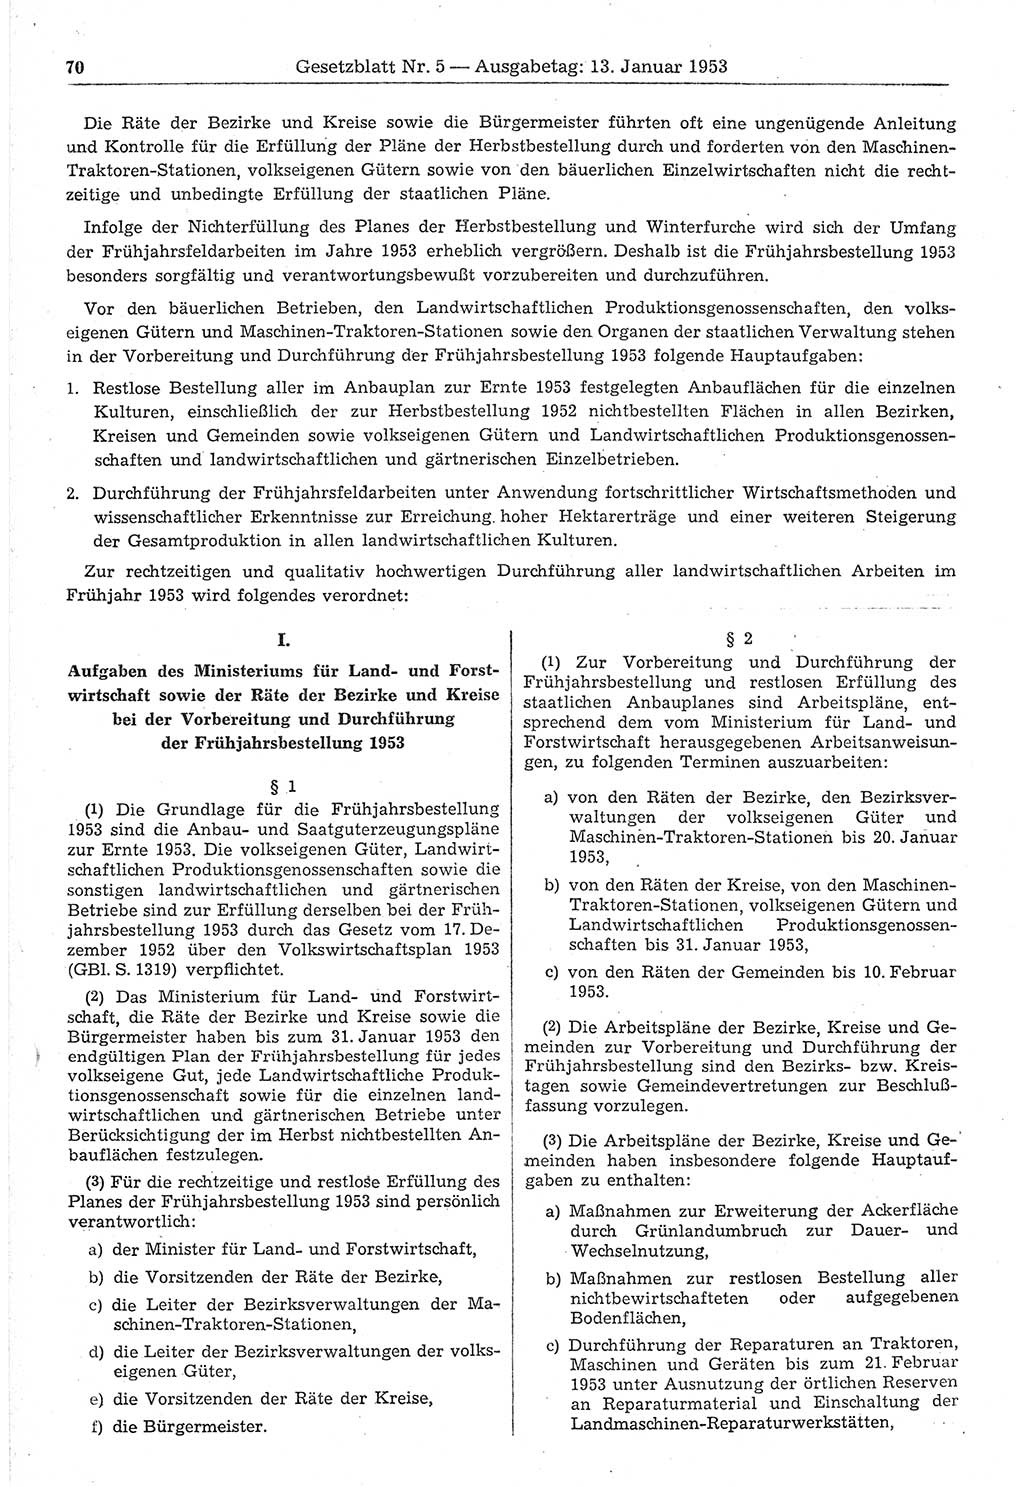 Gesetzblatt (GBl.) der Deutschen Demokratischen Republik (DDR) 1953, Seite 70 (GBl. DDR 1953, S. 70)